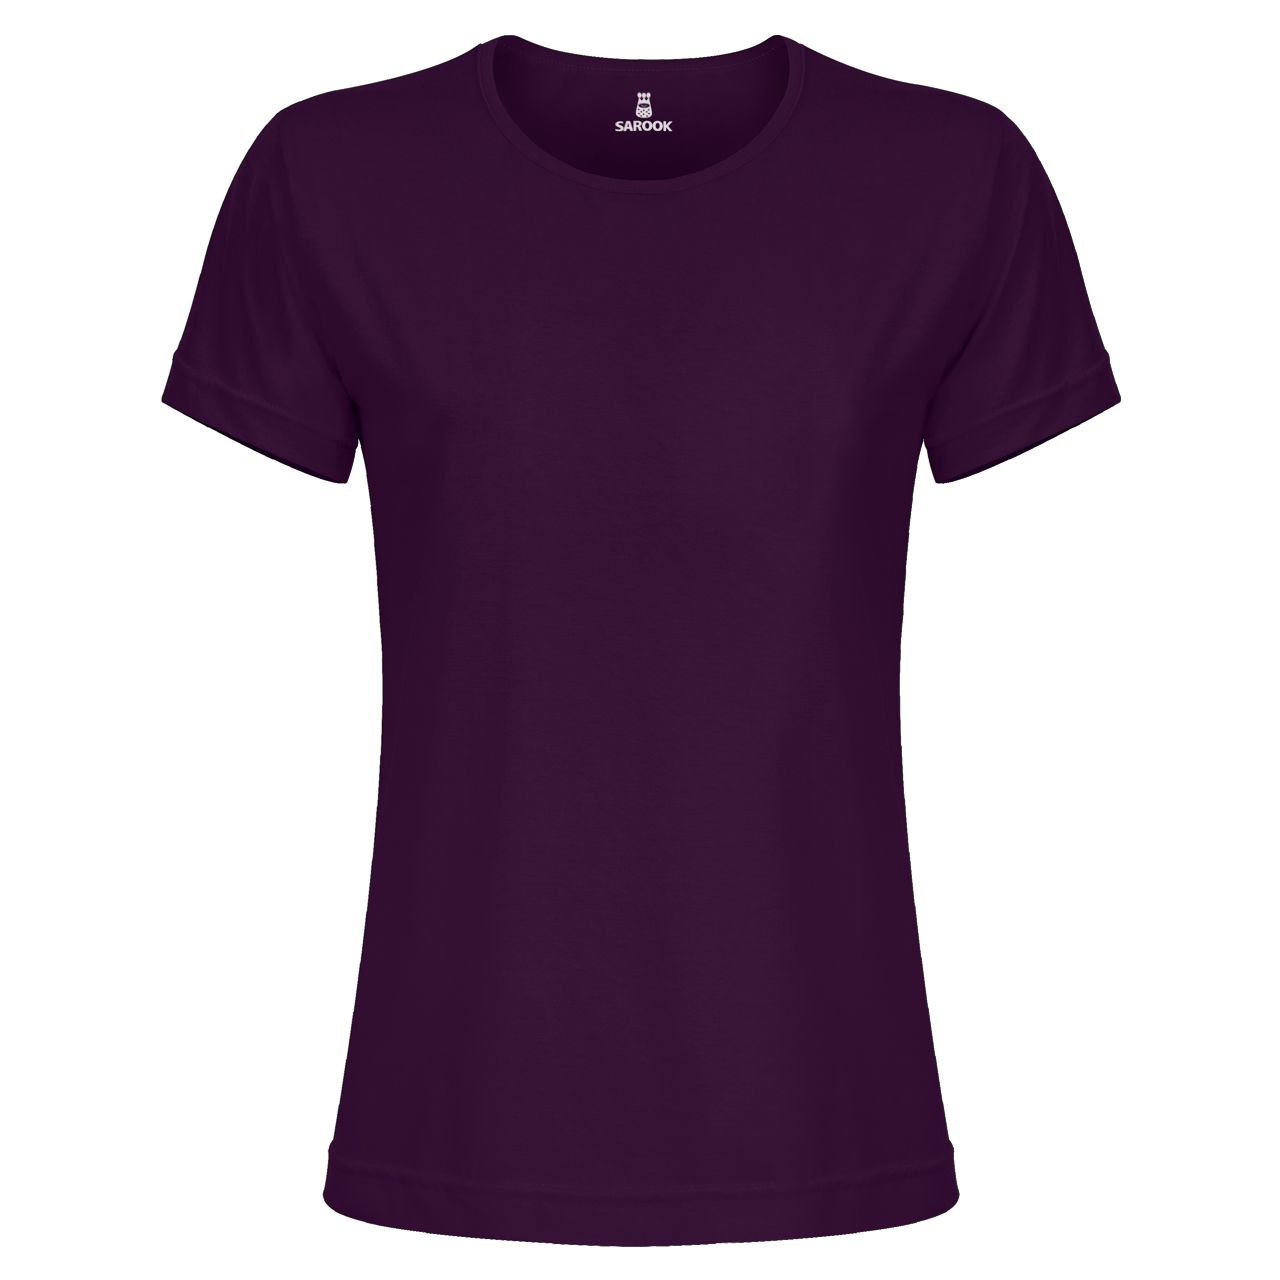 تی شرت آستین کوتاه زنانه ساروک مدل TSHPYR کد 02 رنگ بنفش -  - 1